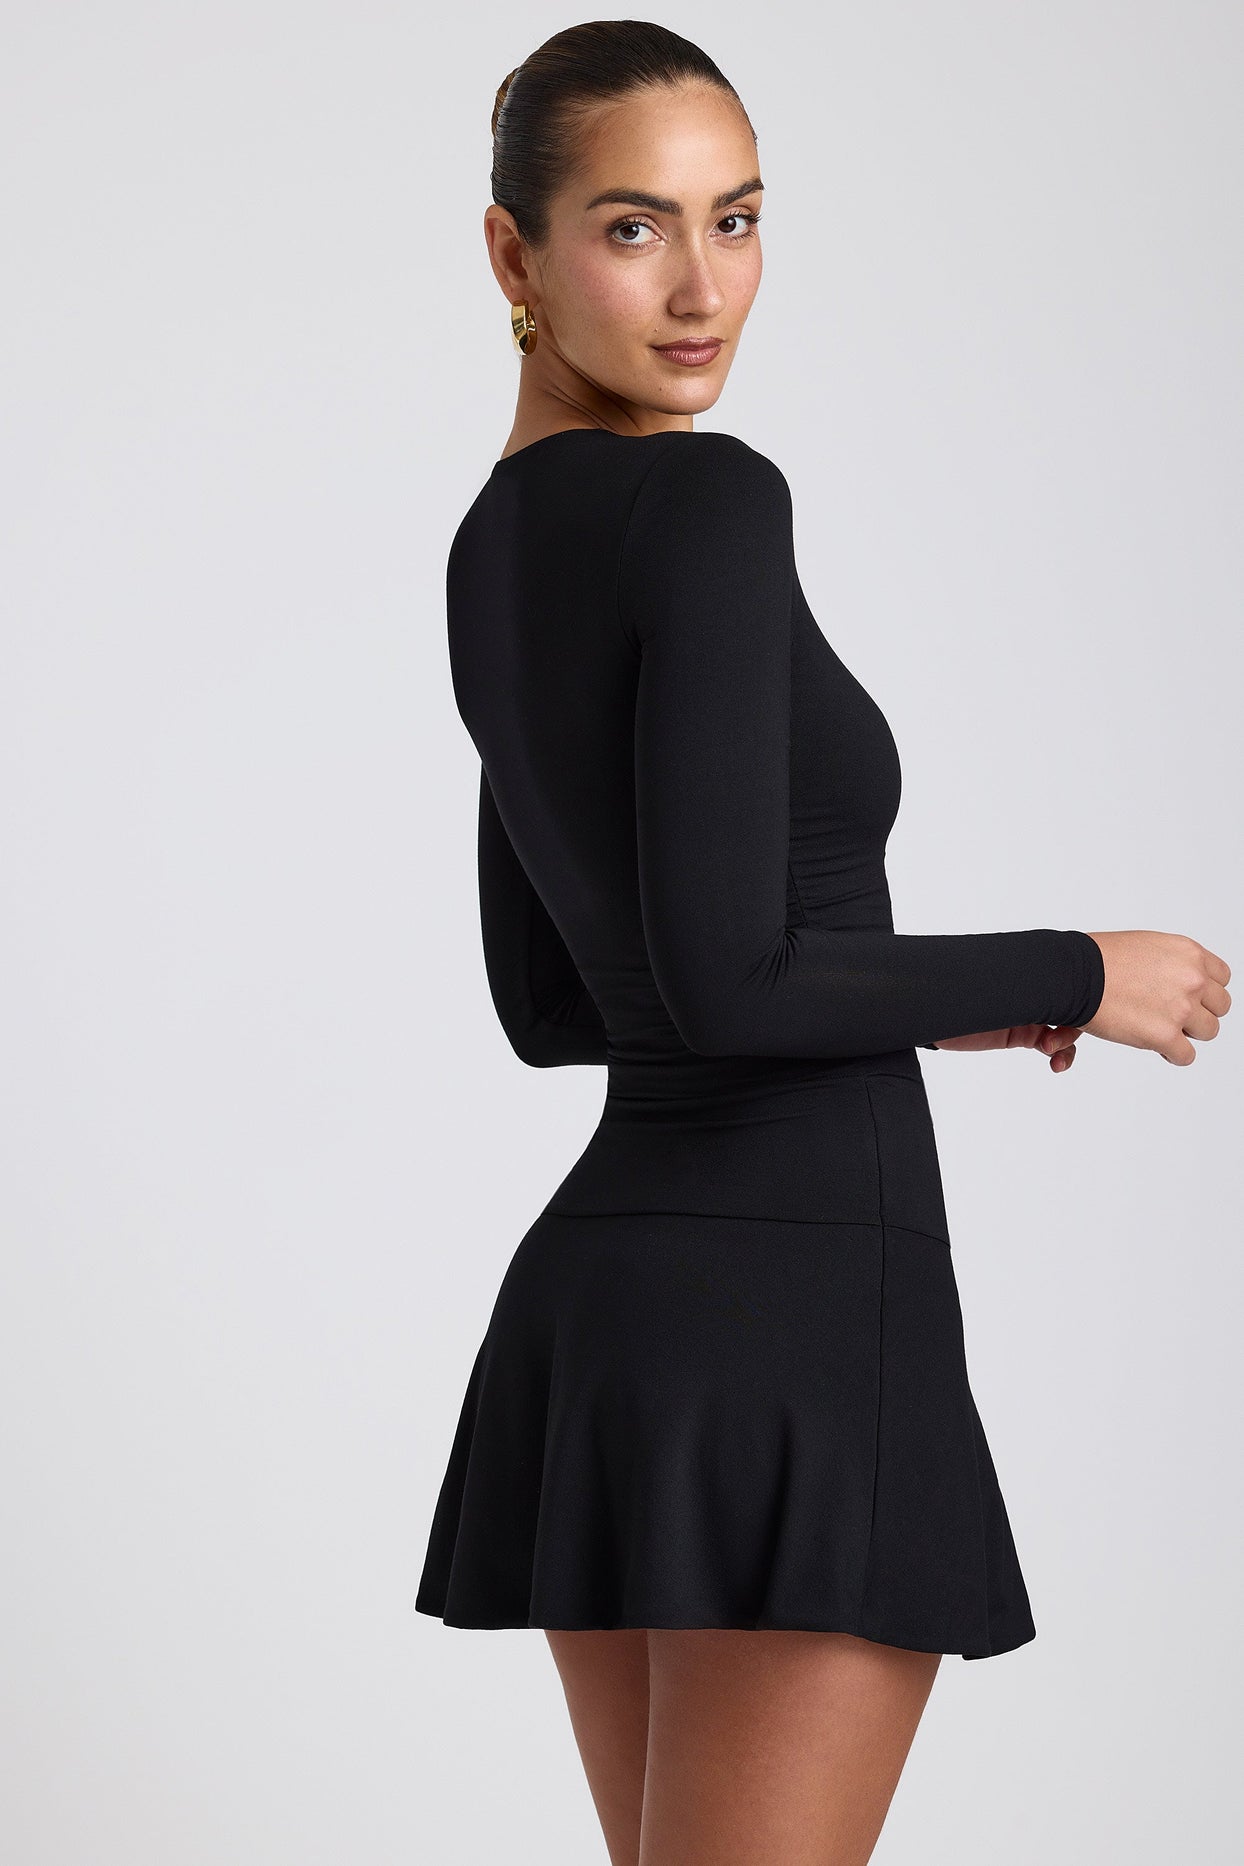 Mini vestido modal franzido com gola redonda em preto